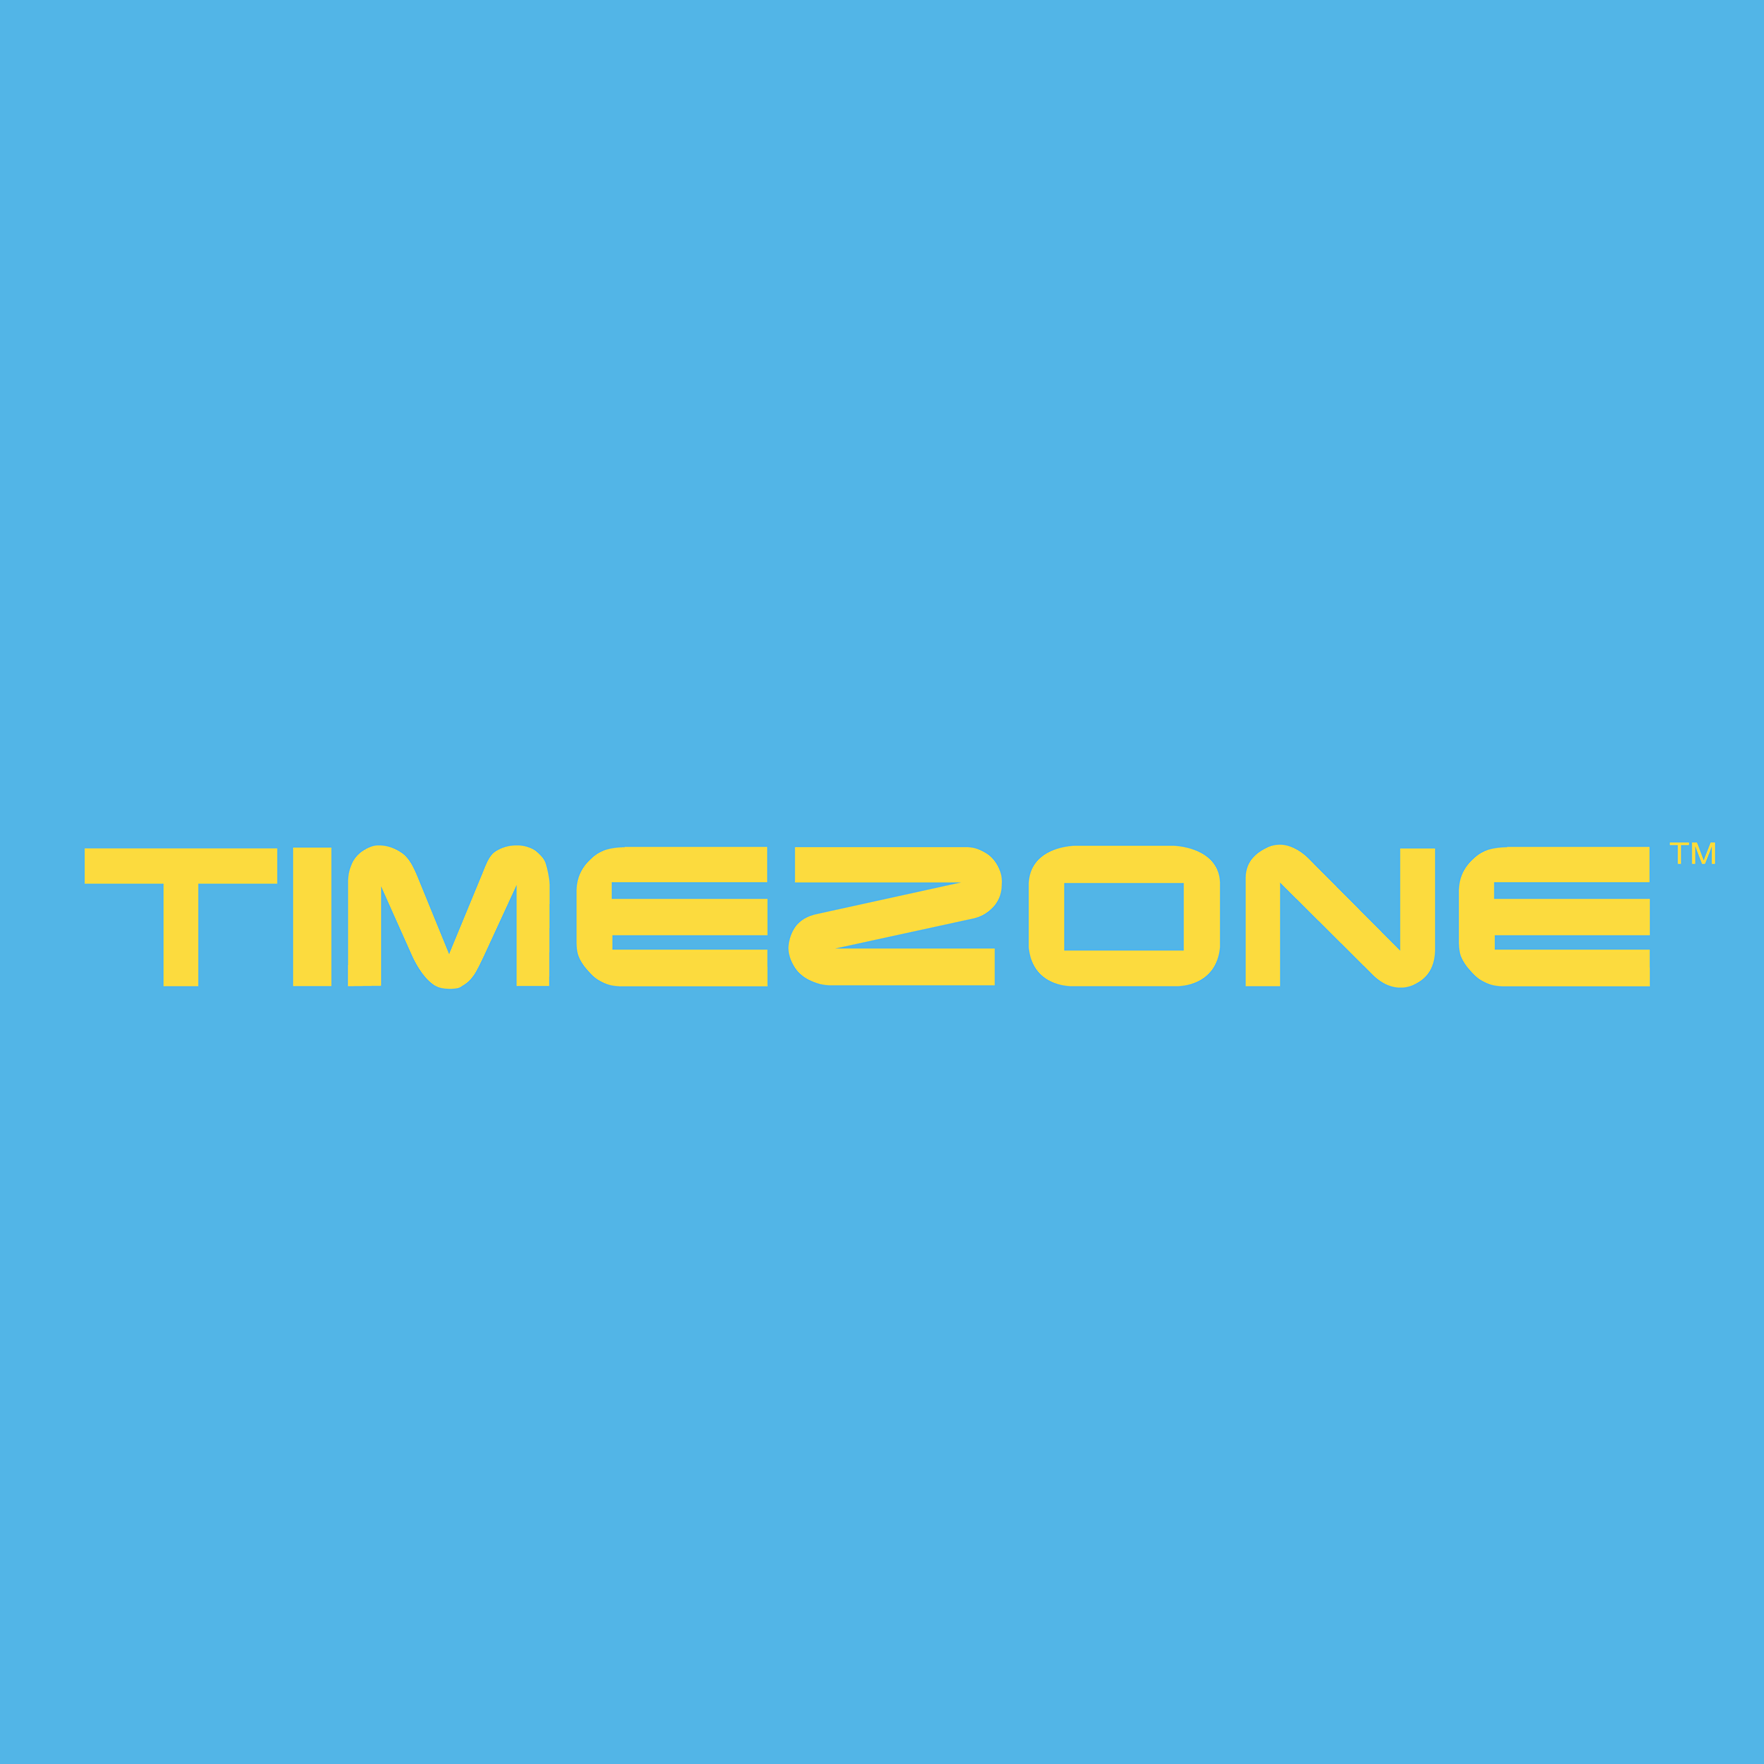 Timezone (Heartbeat @ Bedok) - Dine, Shop, Earn